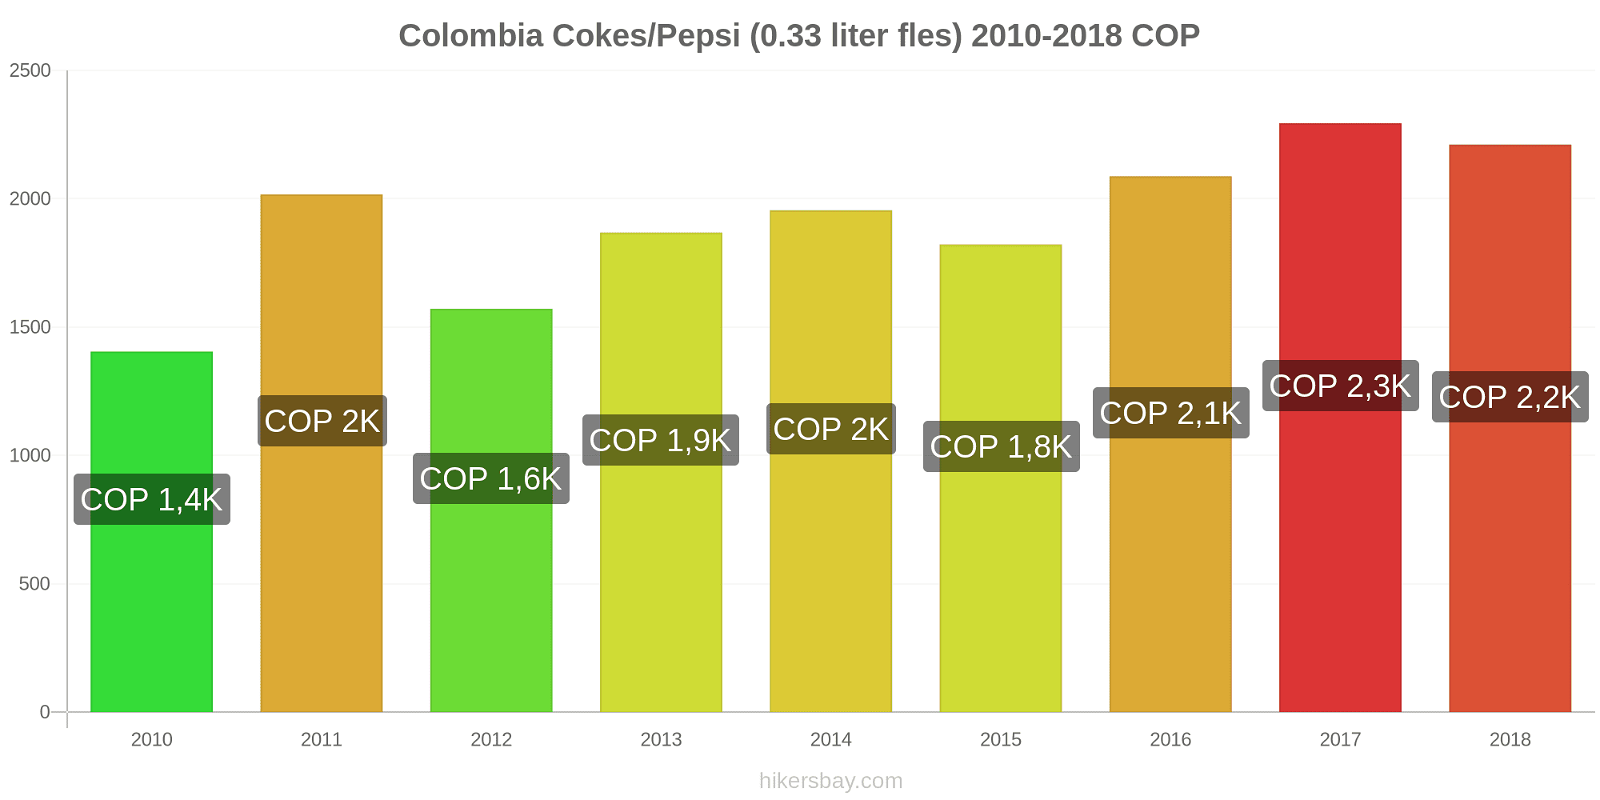 Colombia prijswijzigingen Coca-Cola/Pepsi (0.33 liter fles) hikersbay.com